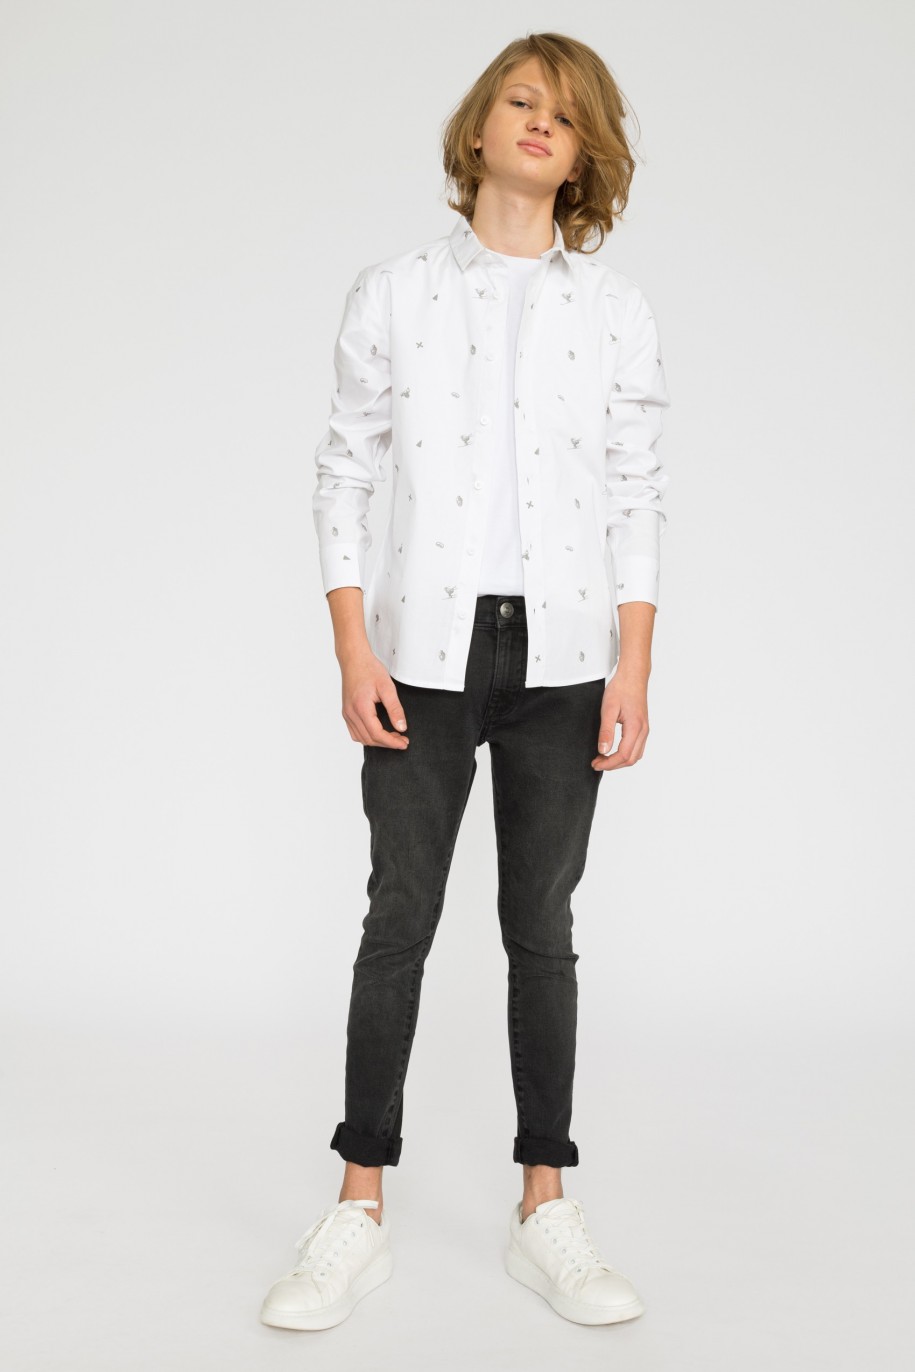 Biała koszula w zimowy wzór dla chłopaka - 32053